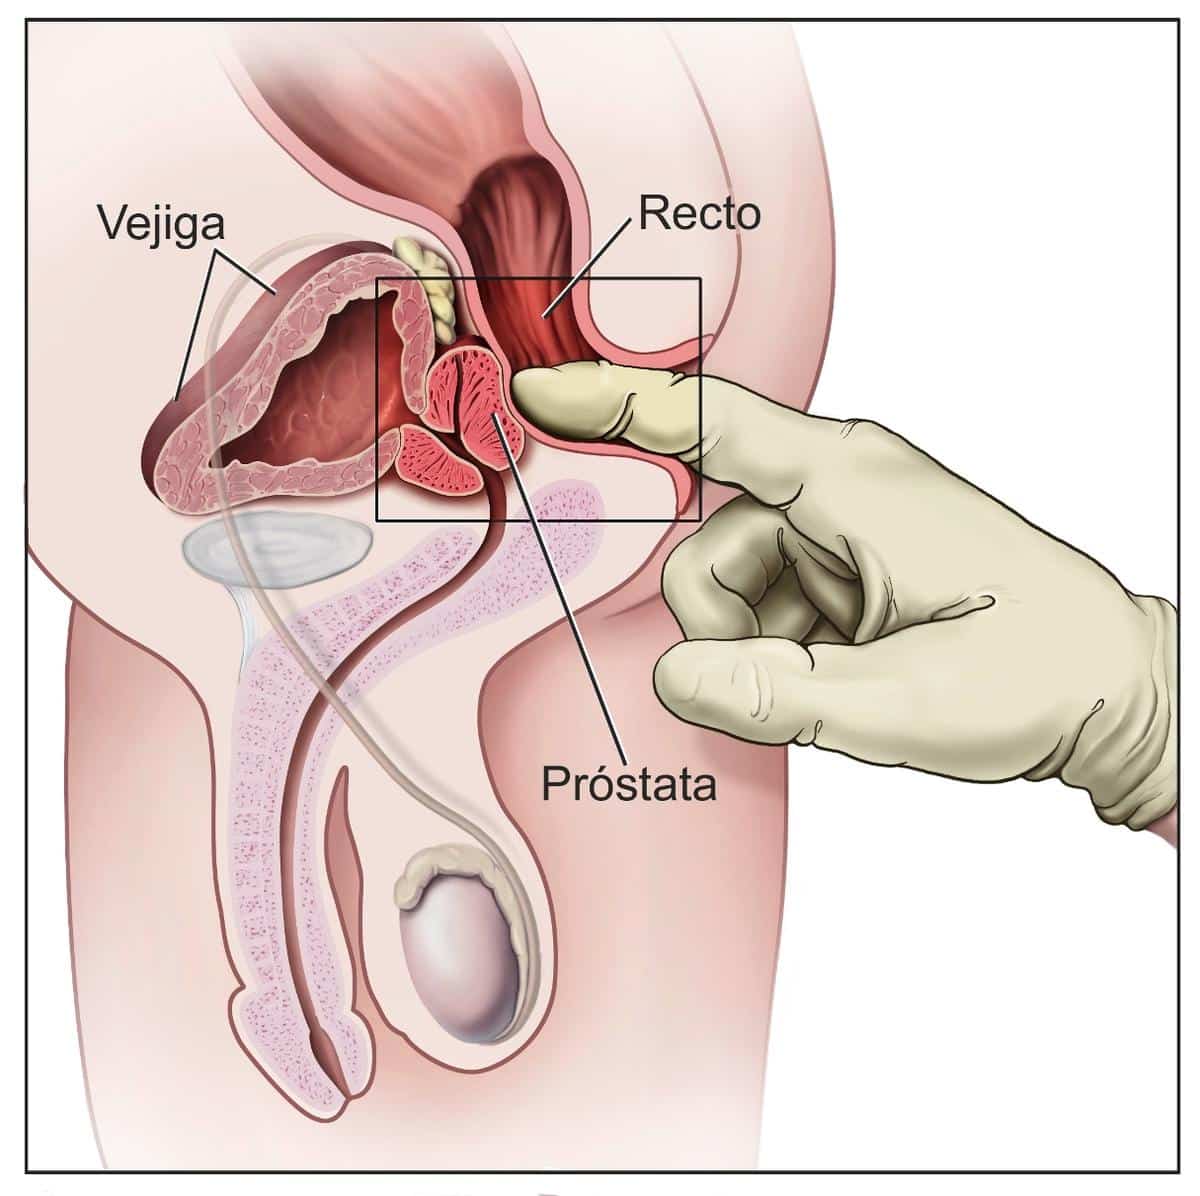 Diagnostico de aumento de tamaño de la próstata mediante el tacto rectal